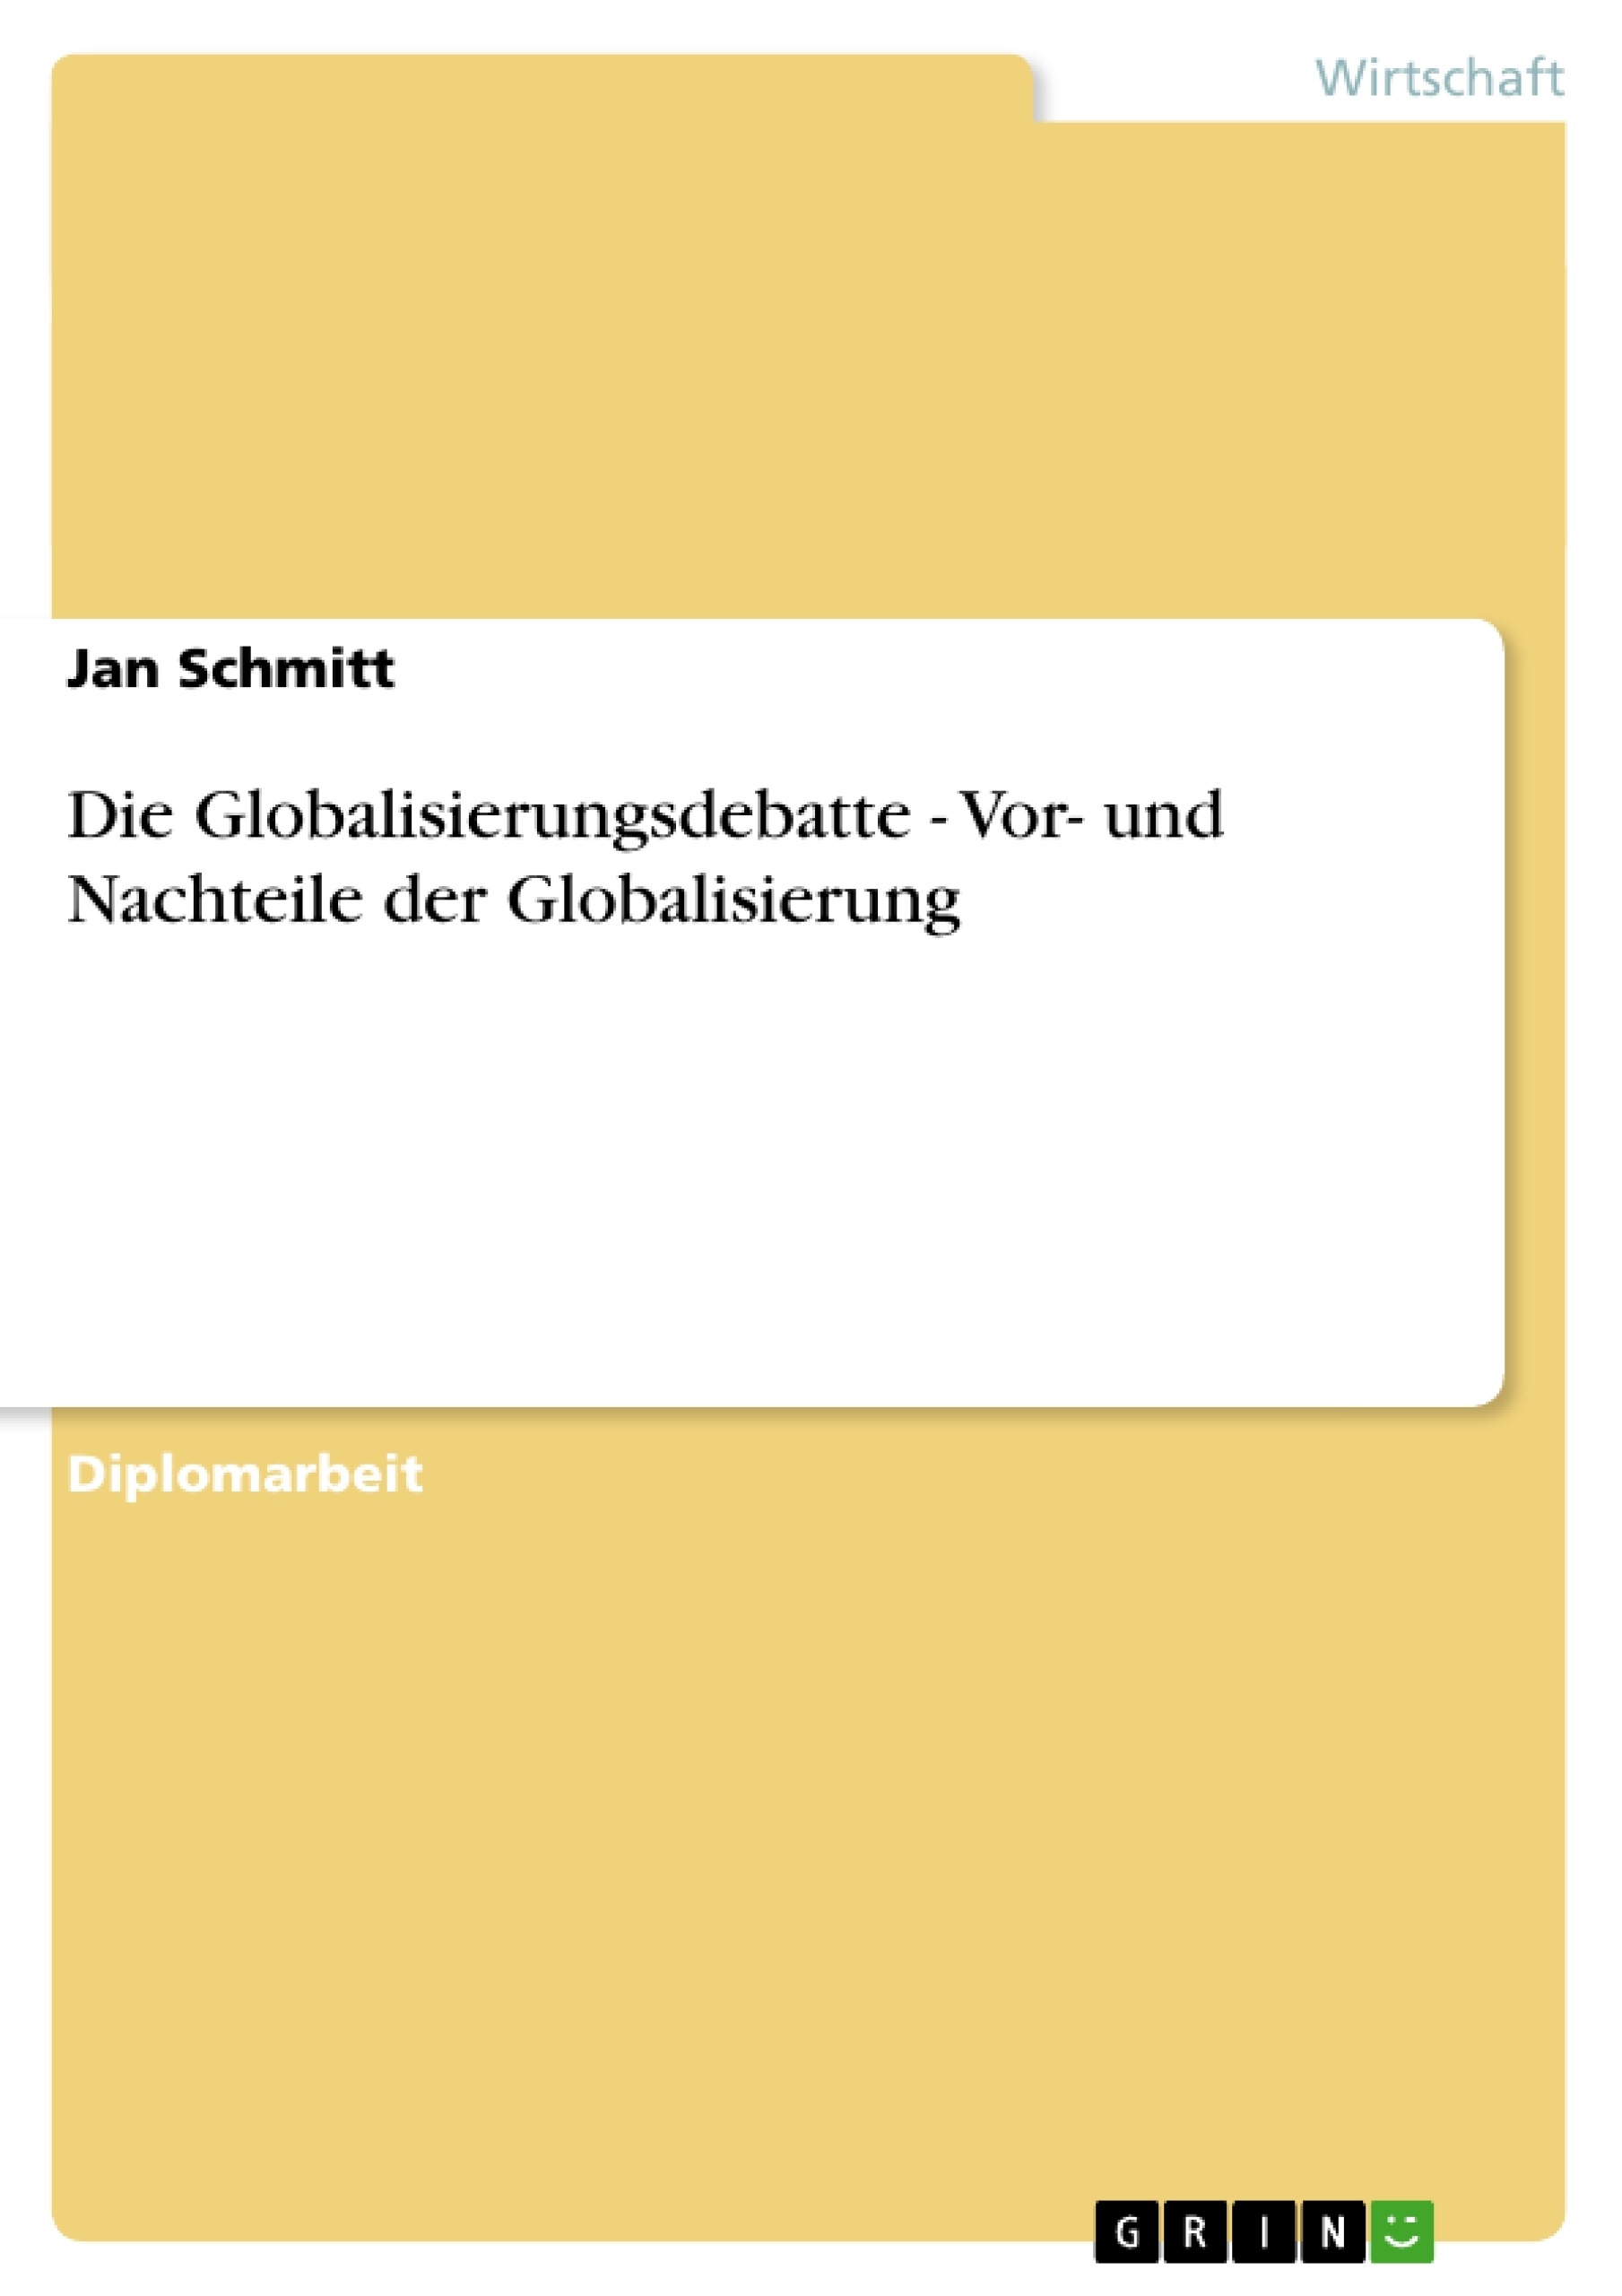 Title: Die Globalisierungsdebatte - Vor- und Nachteile der Globalisierung